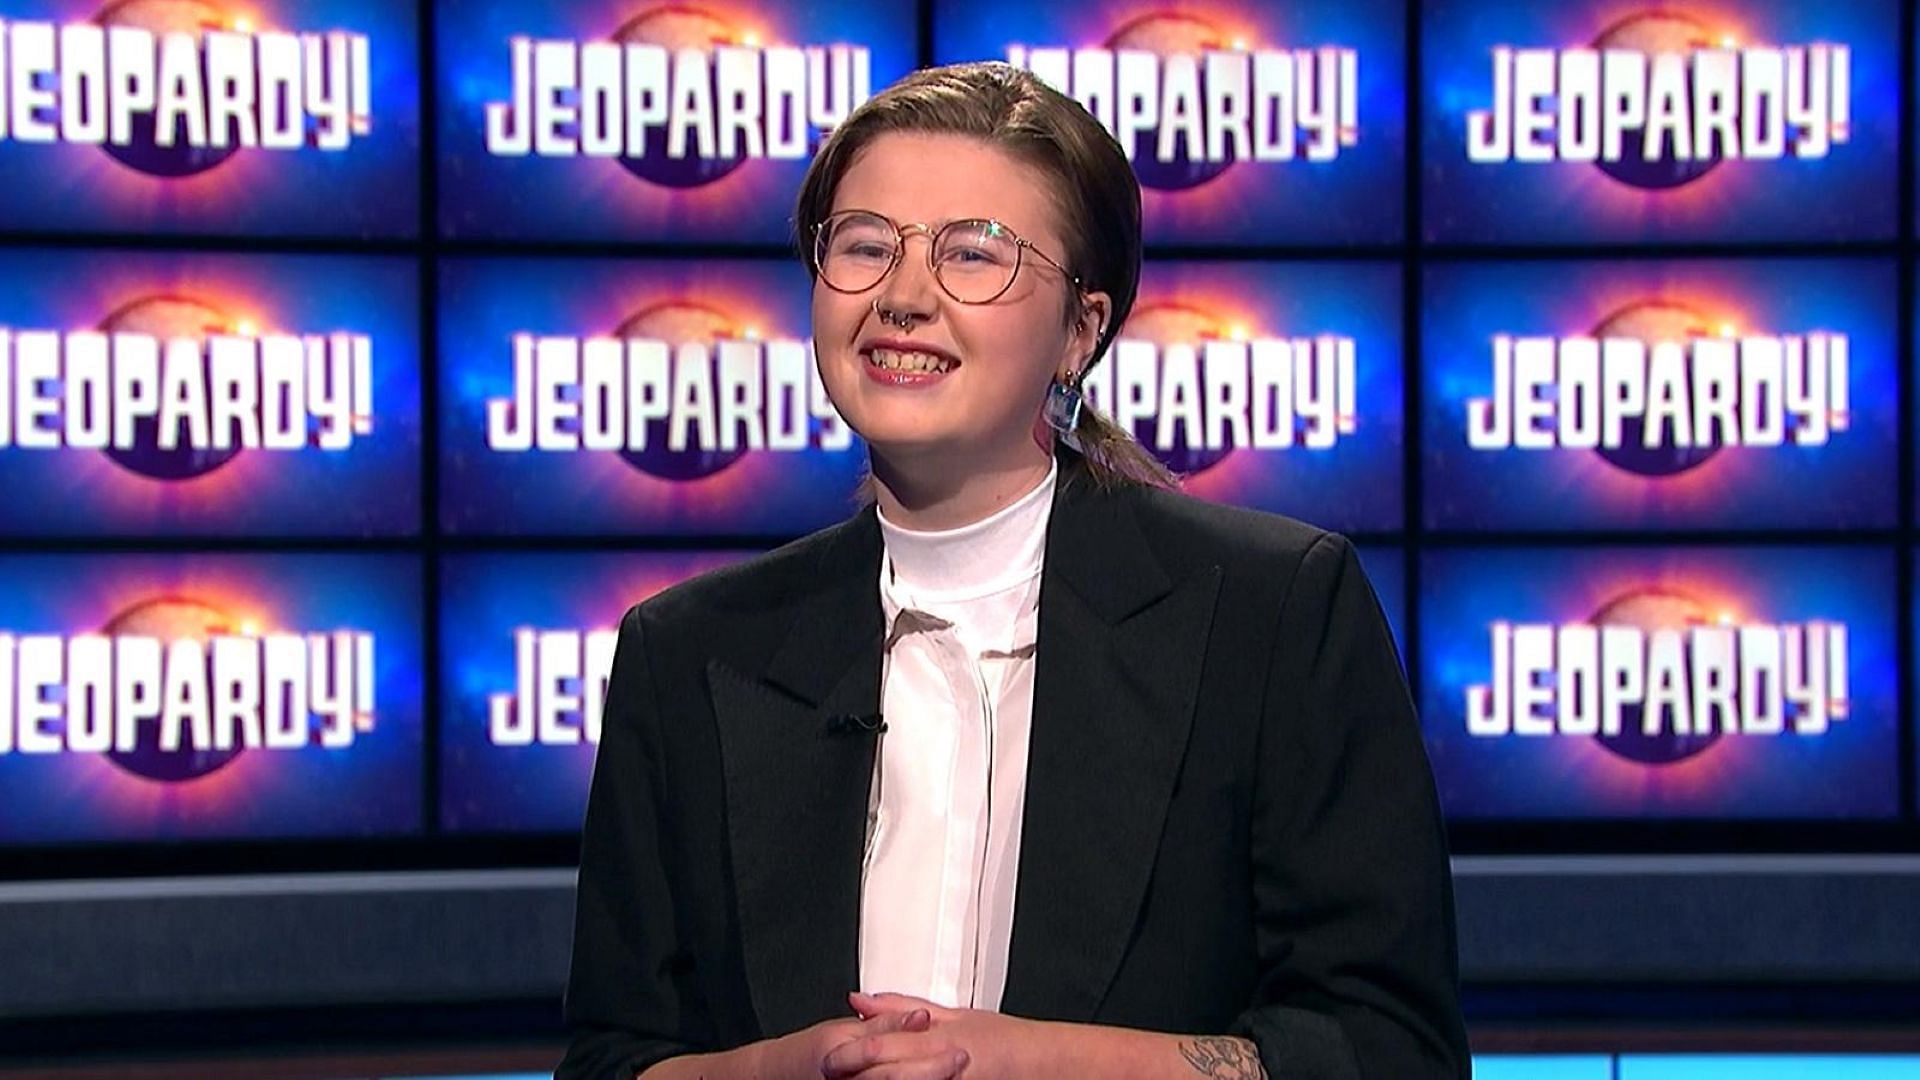 Mattea Roach in Jeopardy! (Image via jeopardy.com)